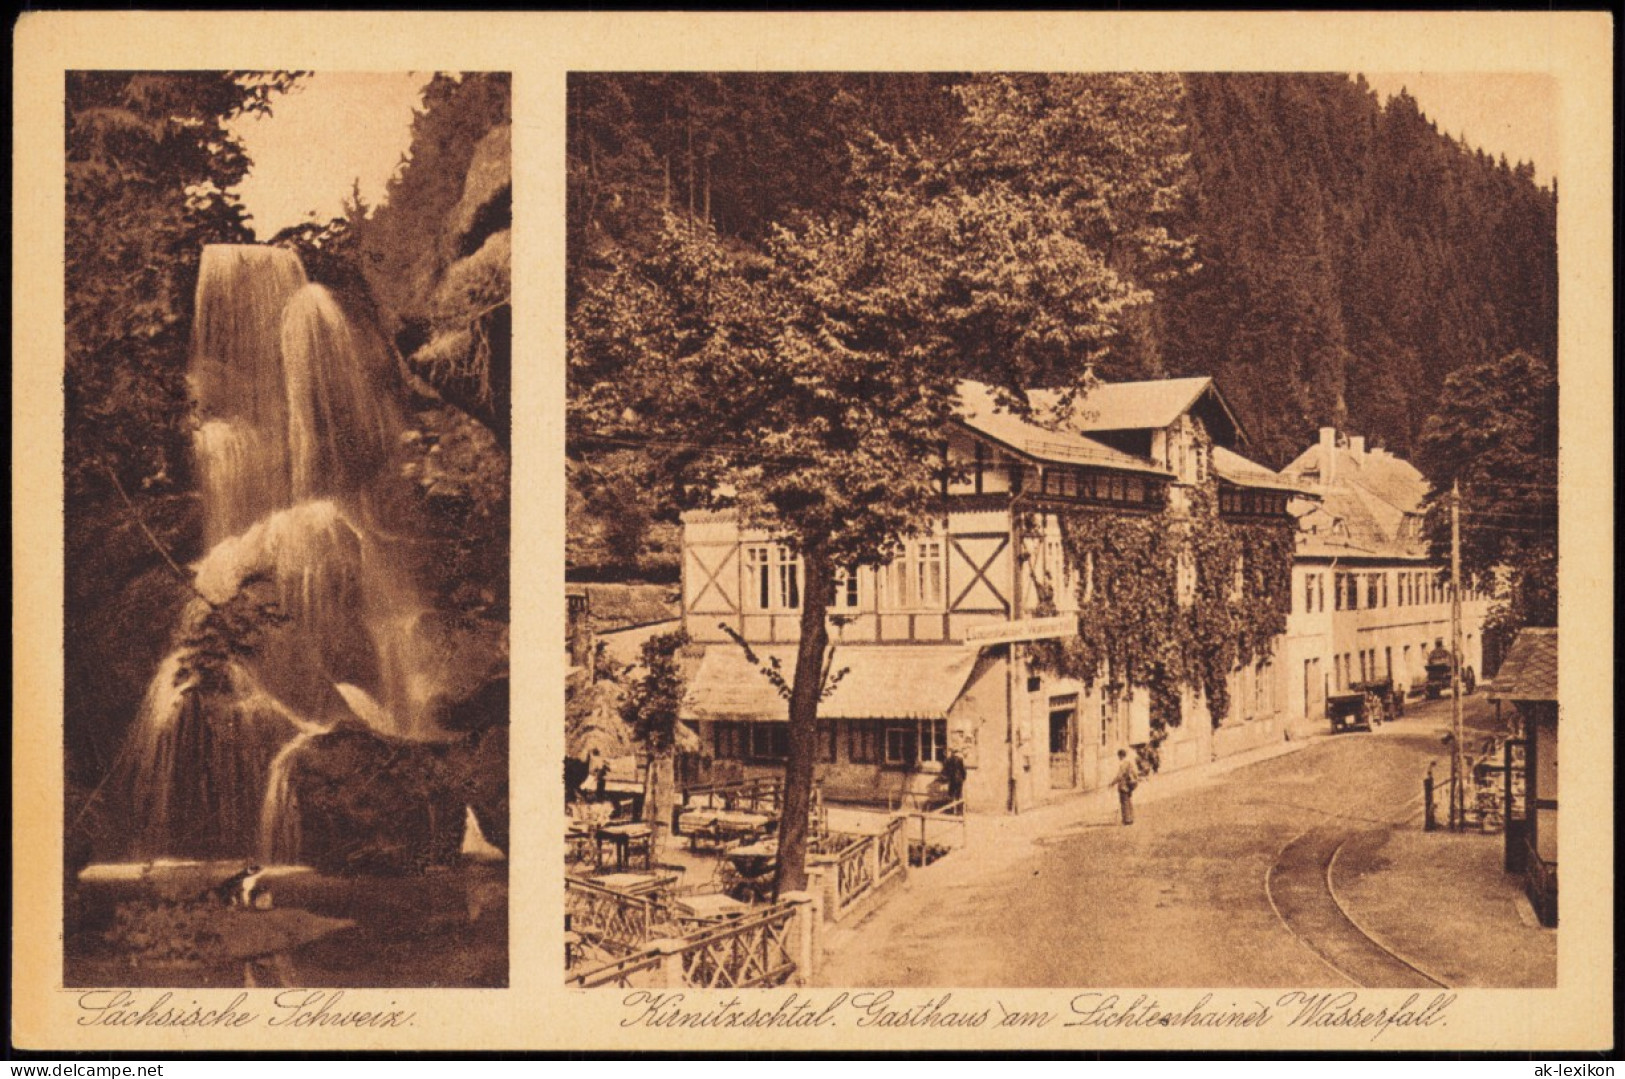 Lichtenhain-Sebnitz 2B Kurnitzschtal Gasthaus Am Lichteshainer Wasserfall. 1928 - Kirnitzschtal